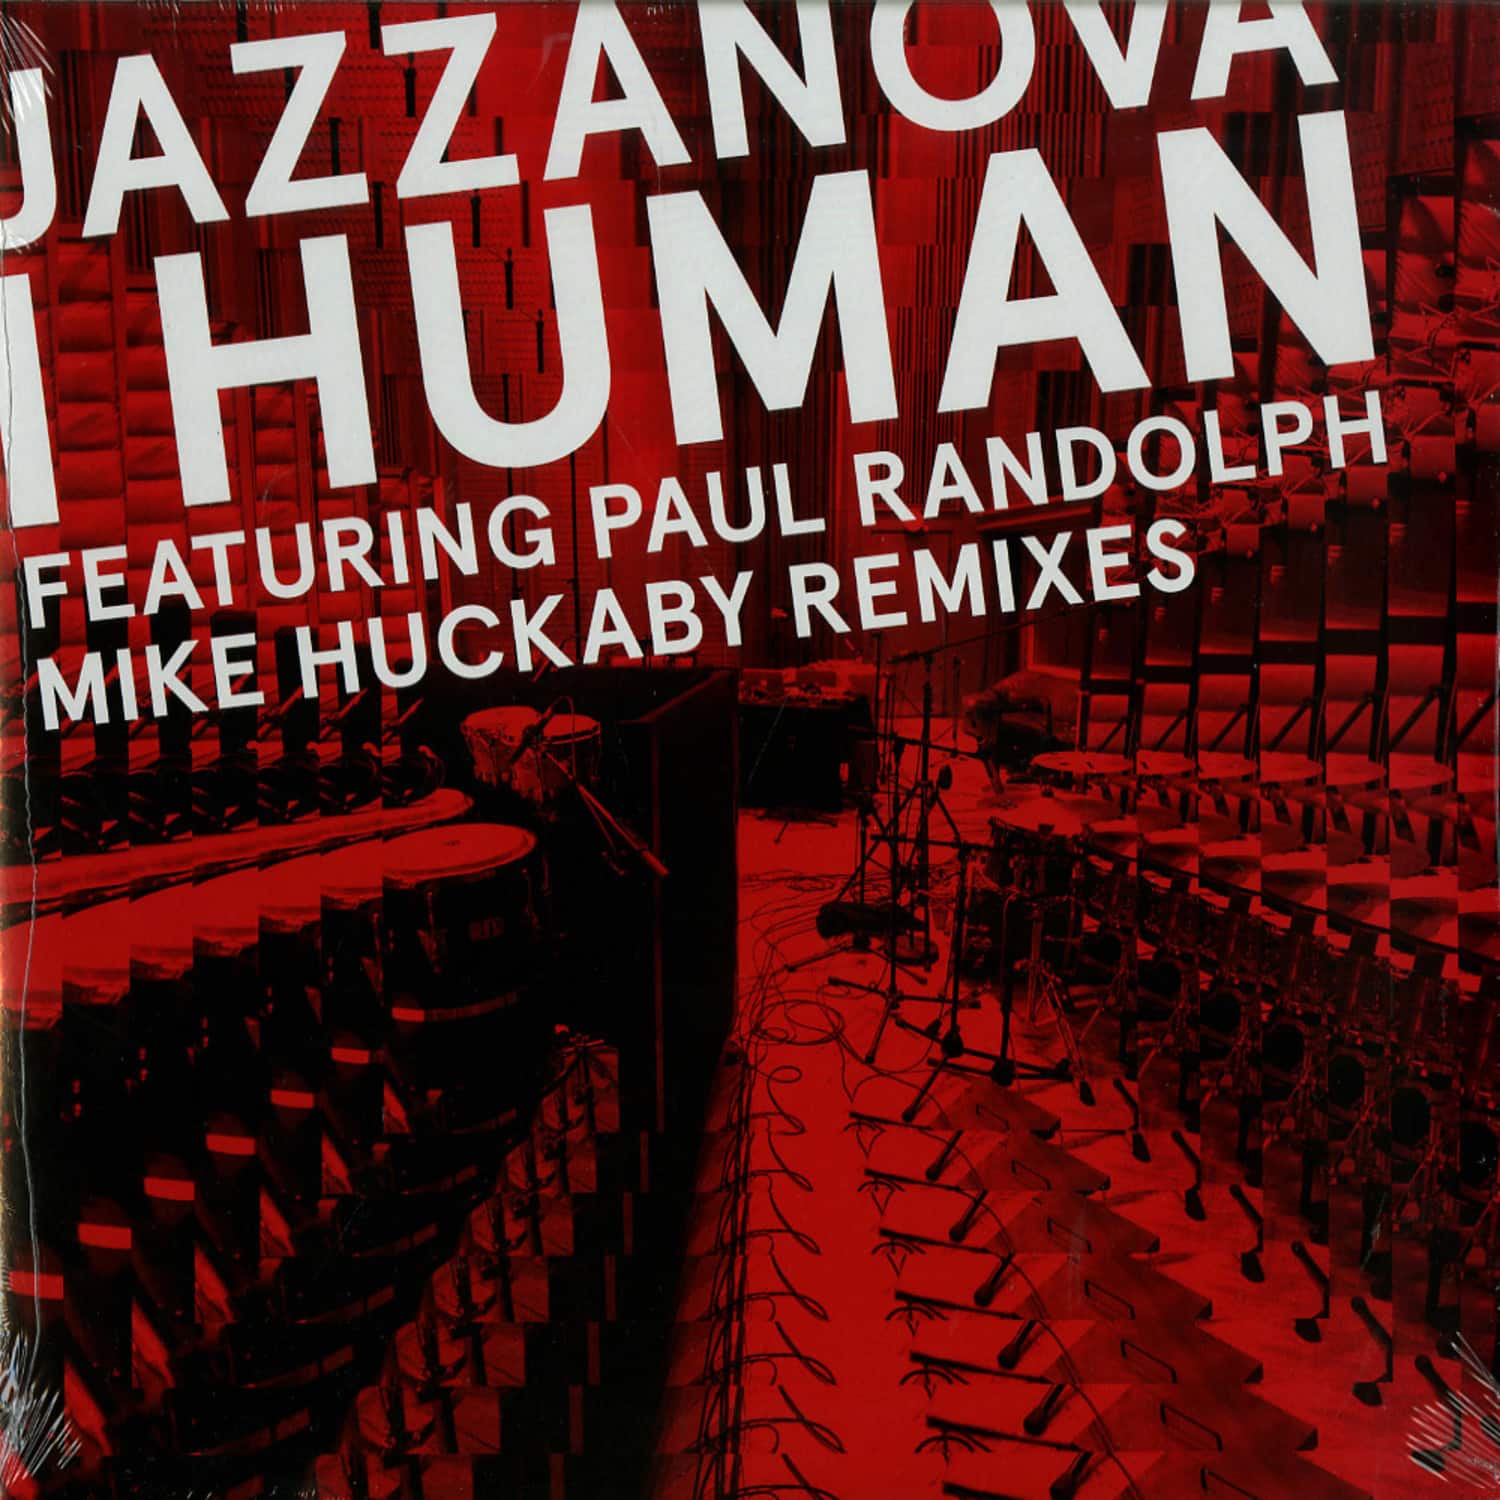 Jazzanova - I HUMAN 